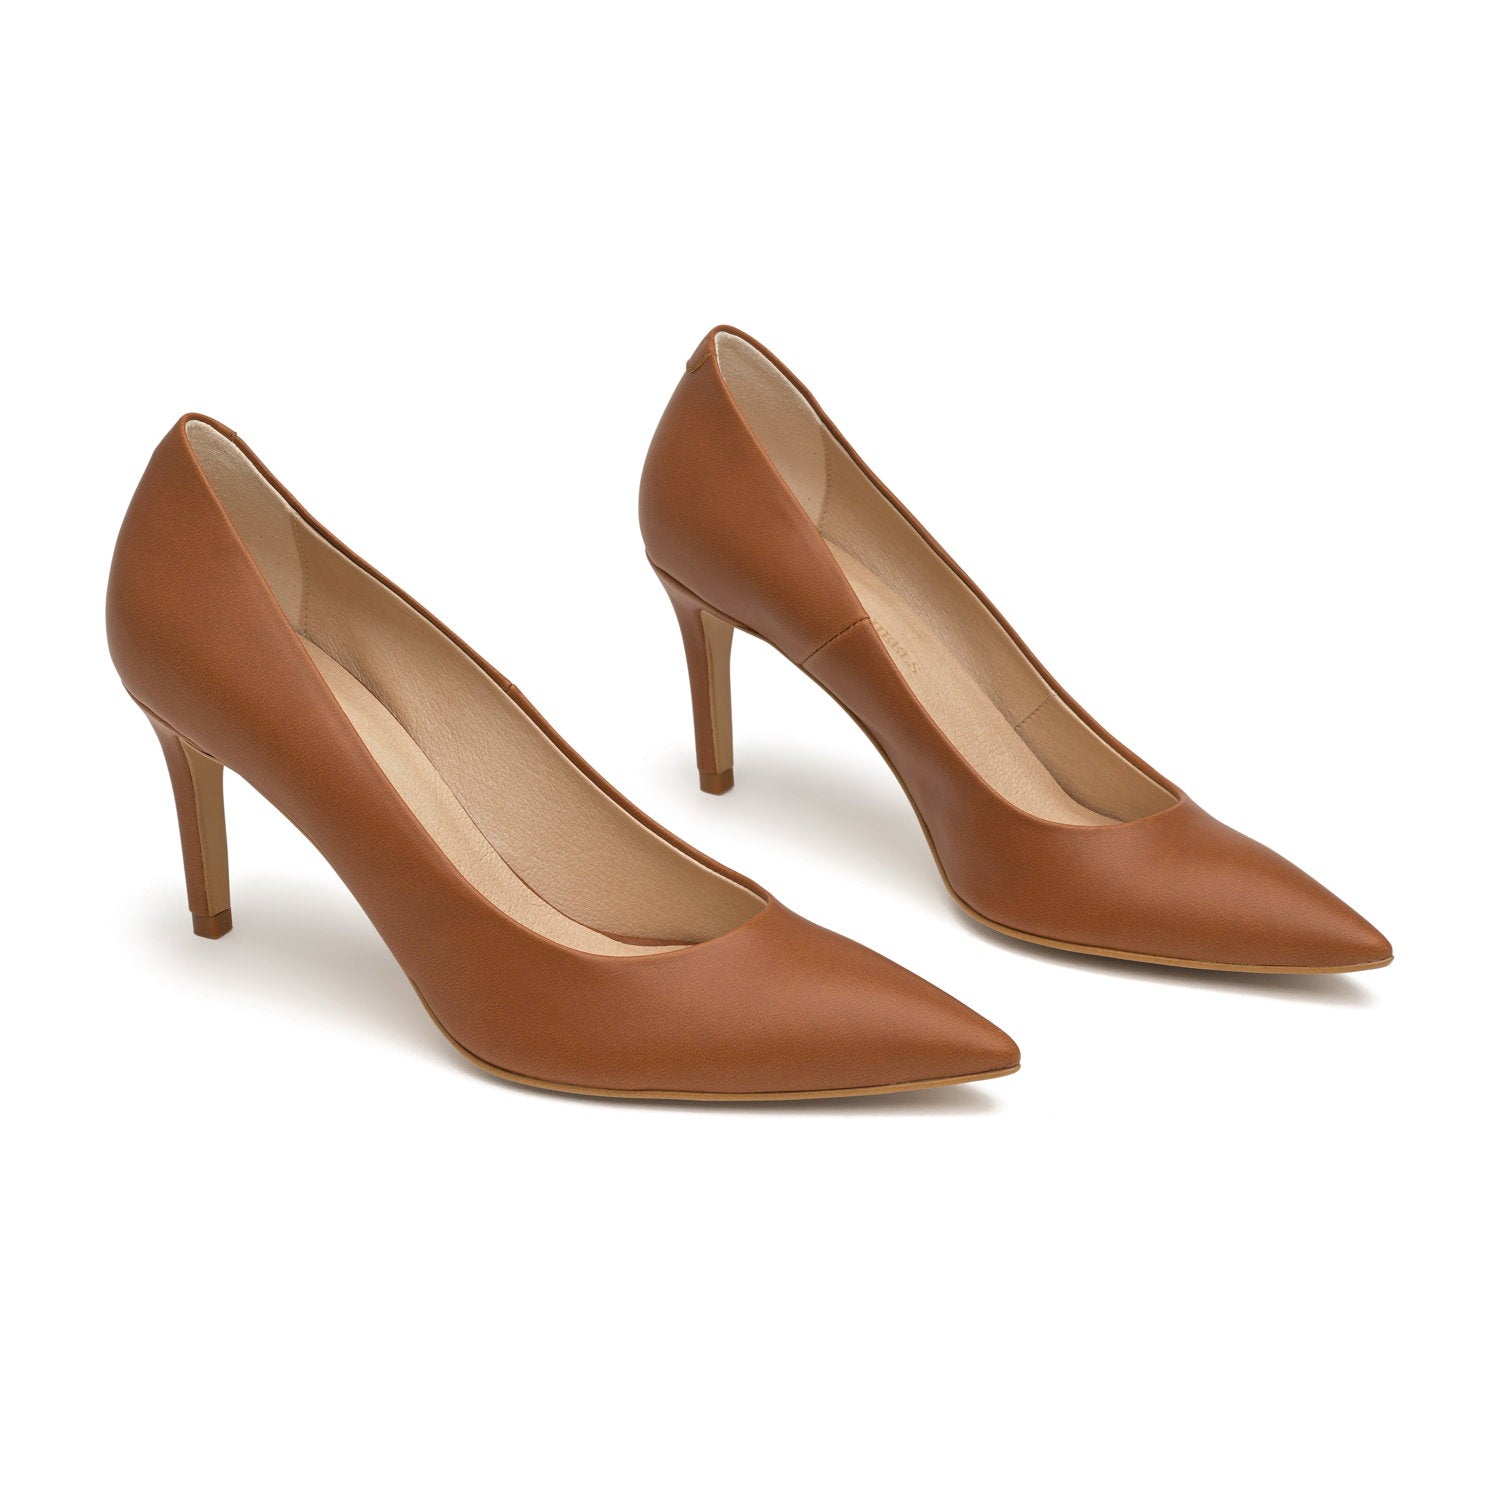 The Brown - vegan 70mm heels